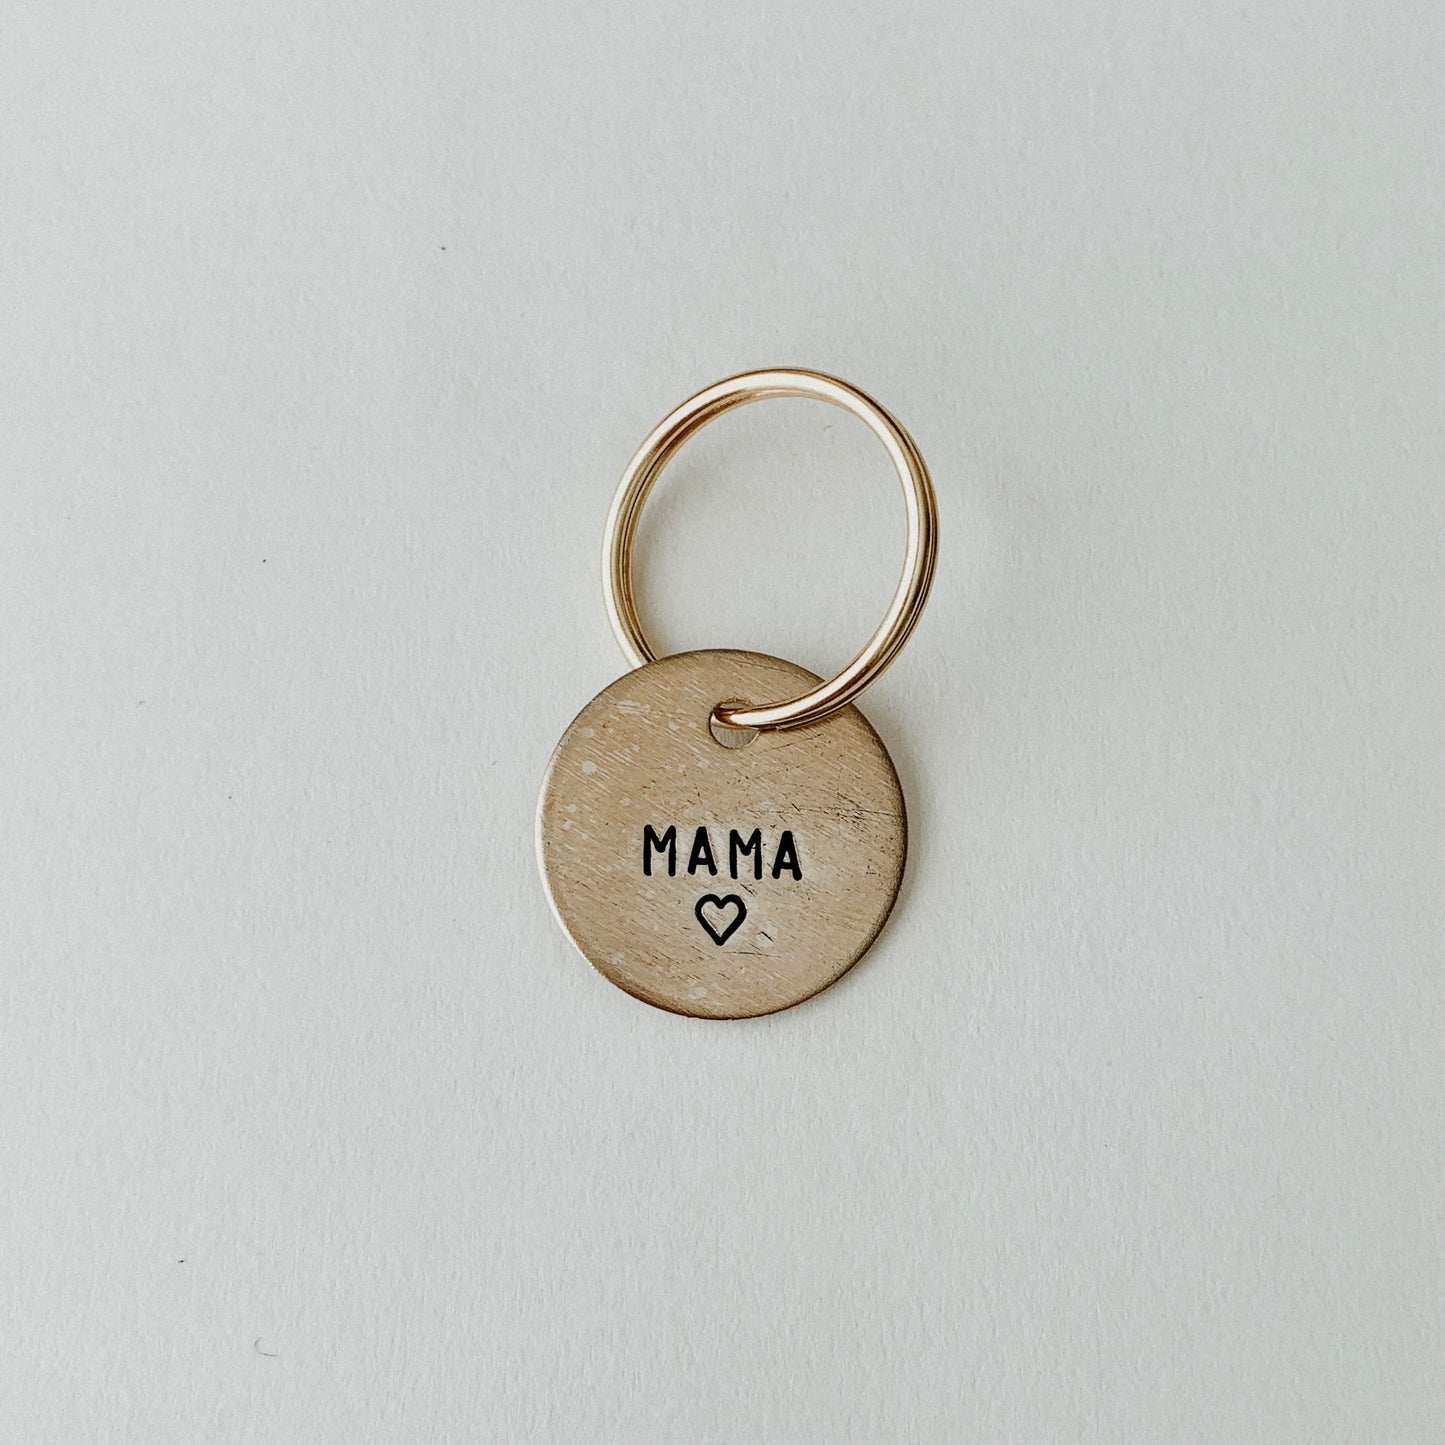 Mama / Small Brass Key Tag